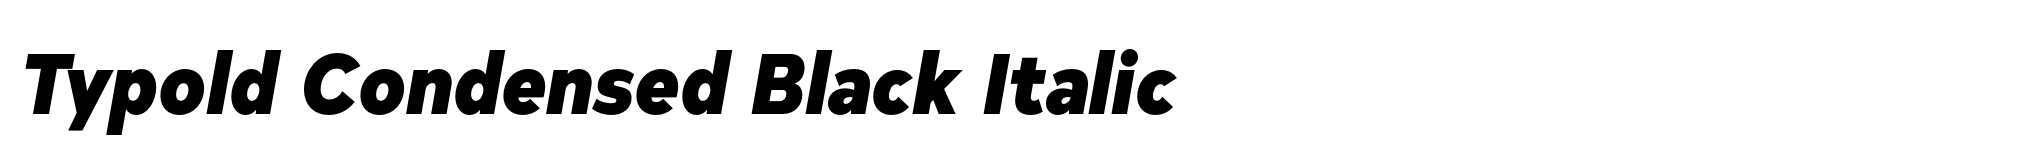 Typold Condensed Black Italic image